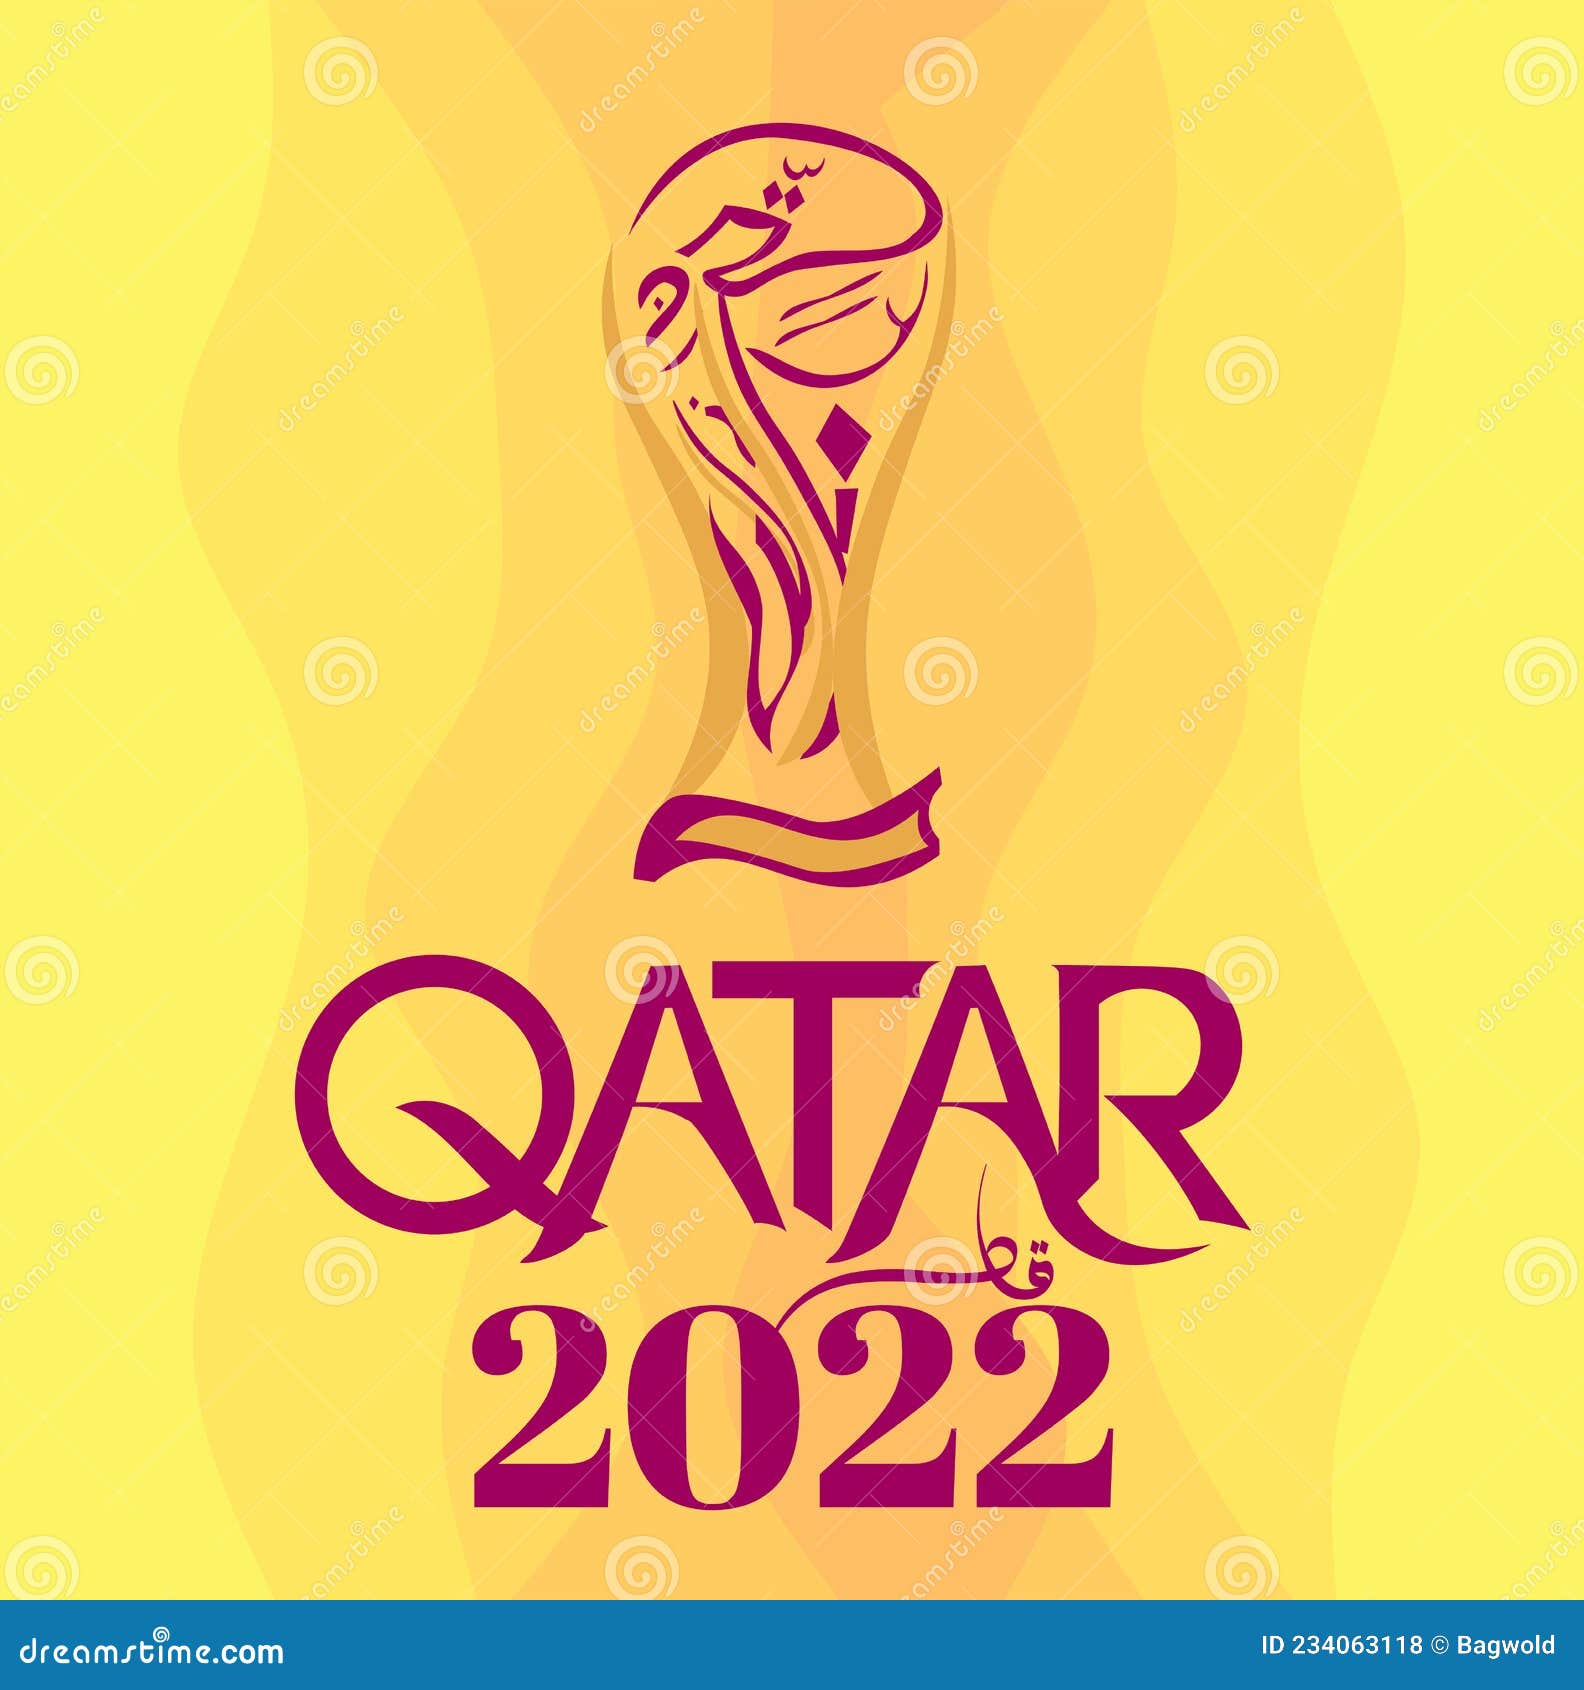 Ilustración De La Copa Mundial De Fútbol De Qatar 2022 Foto de archivo Ilustración de concepto, naturalizado: 234063118